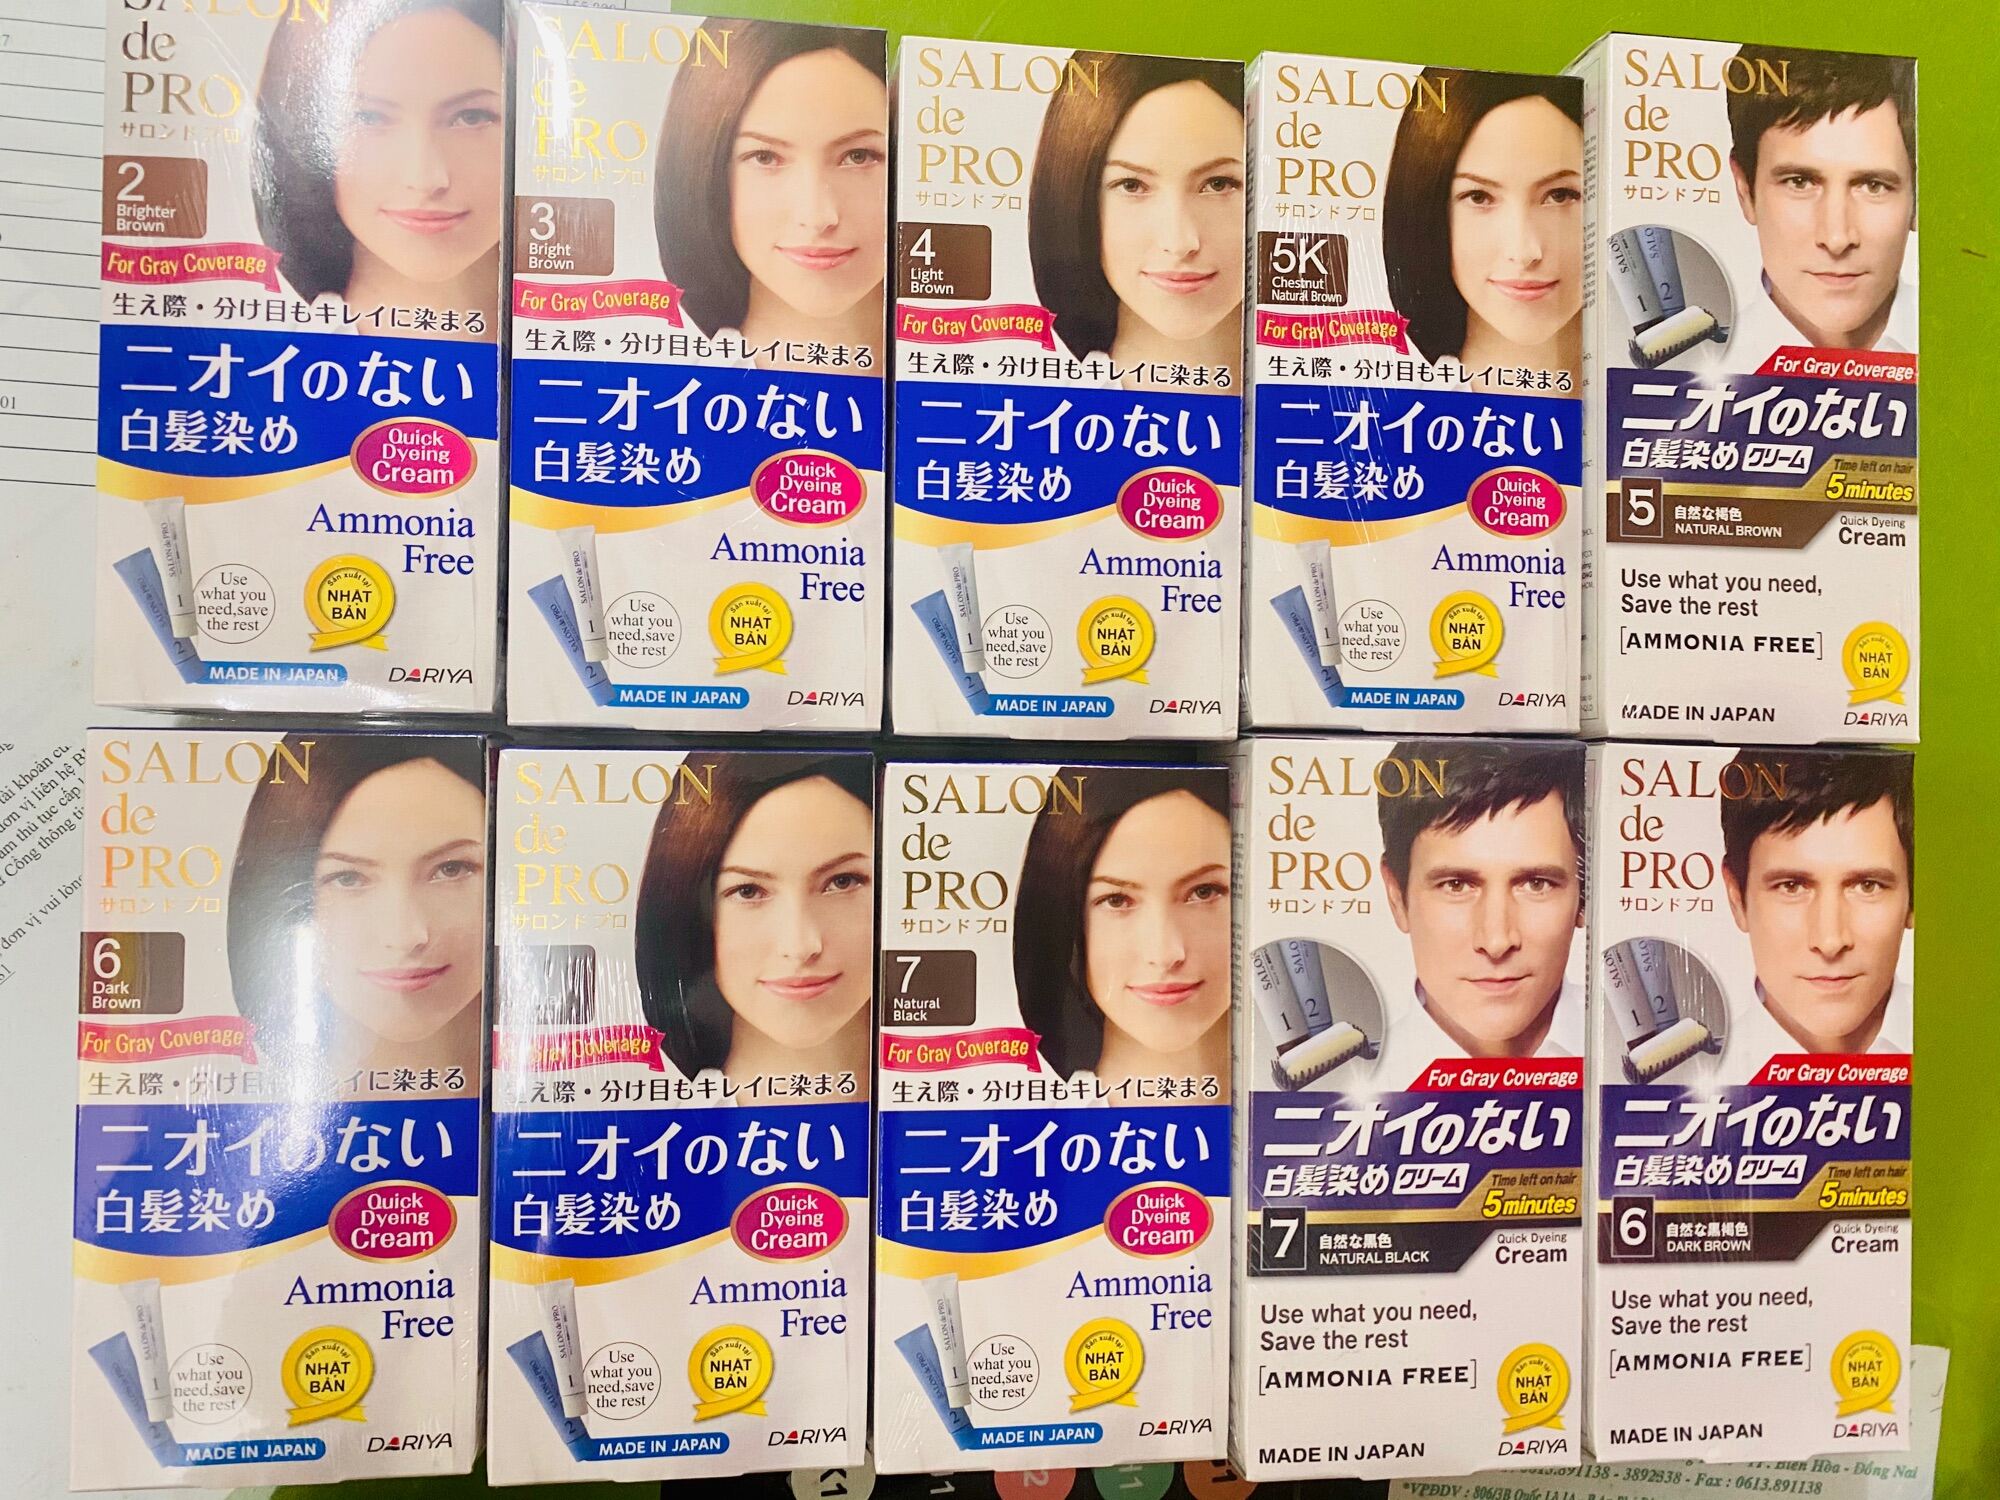 Khám phá sự thuần Nhật của dòng sản phẩm Salon de Pro từ Nhật Bản, mang đến cho bạn mái tóc mềm mượt và sáng bóng. Hãy xem hình ảnh để hiểu rõ hơn về sản phẩm này!